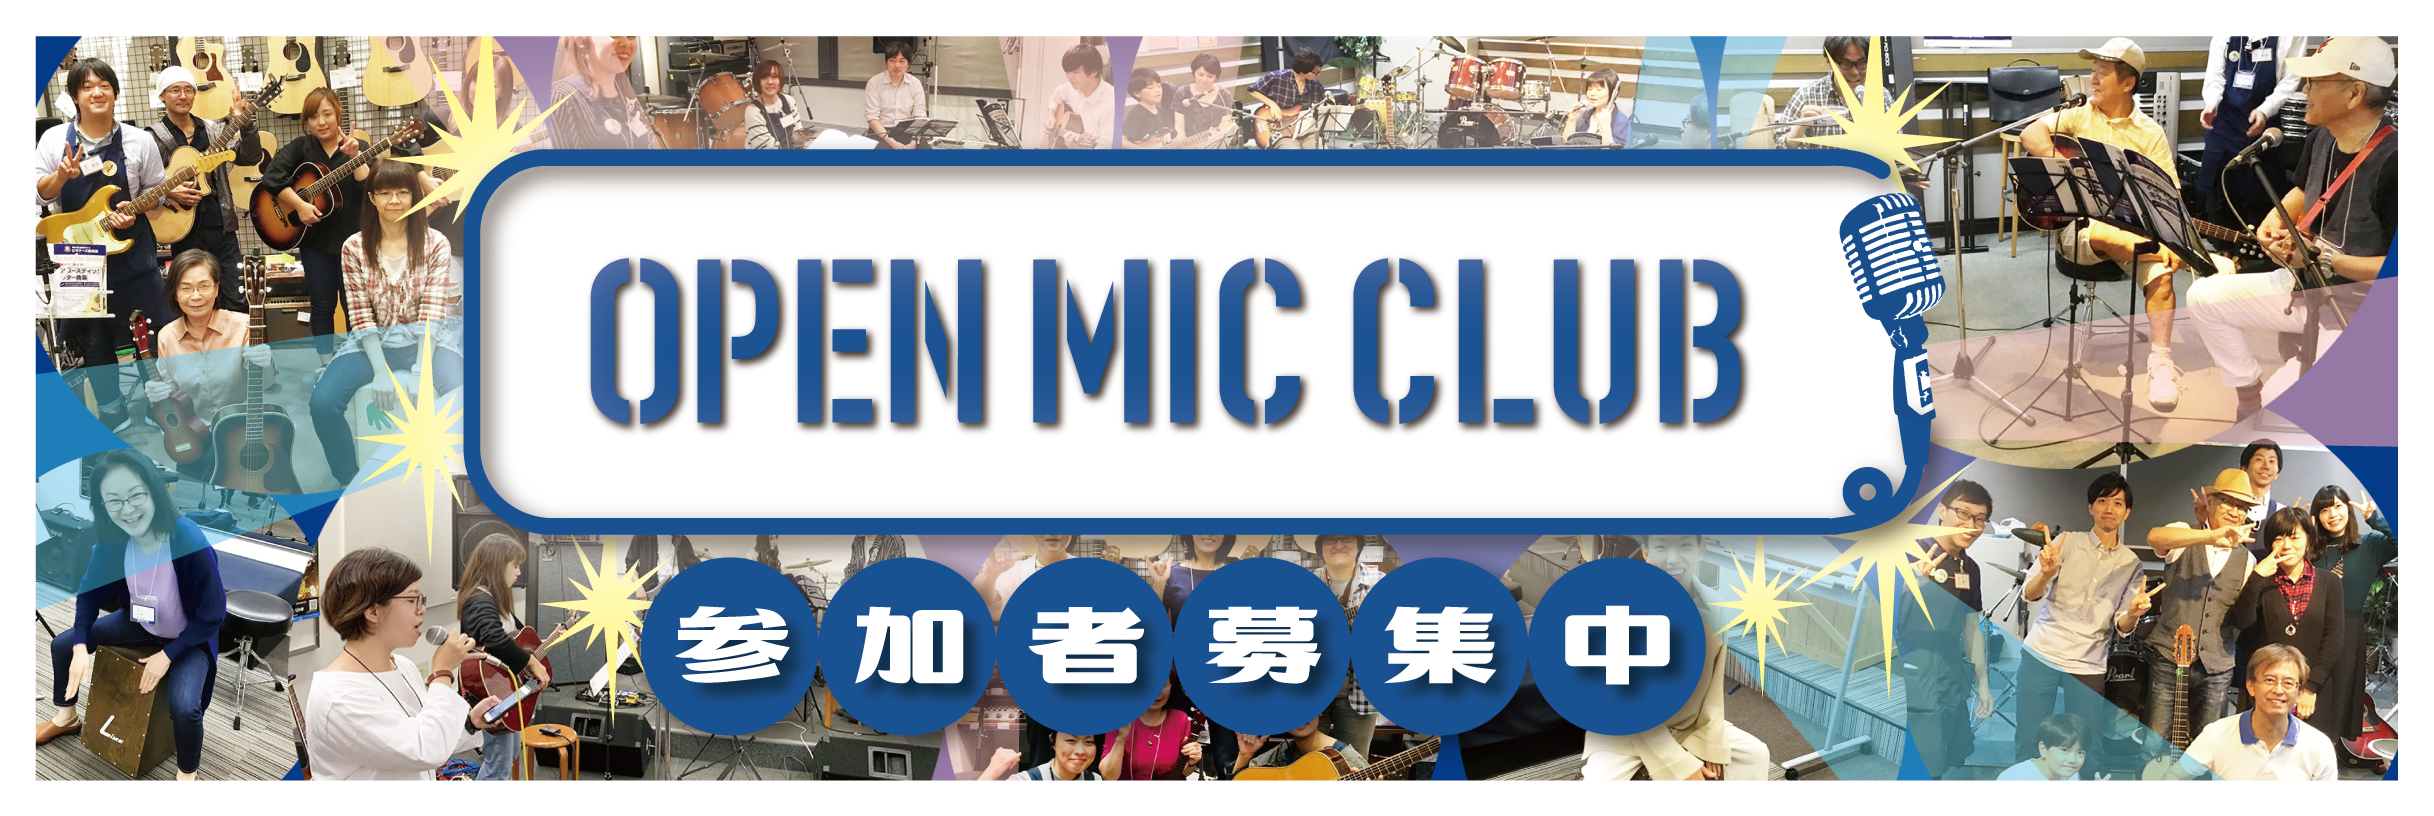 OPEN MIC CLUBサークル担当の小池です！]]7月11日（日）に開催された「OPEN MIC CLUB」のサークル活動をレポートします！ *河原町店「OPEN MIC CLUB」は私が担当しています！ |*名前|小池| これからオープンマイククラブを担当します小池です！]]「OPEN MIC […]